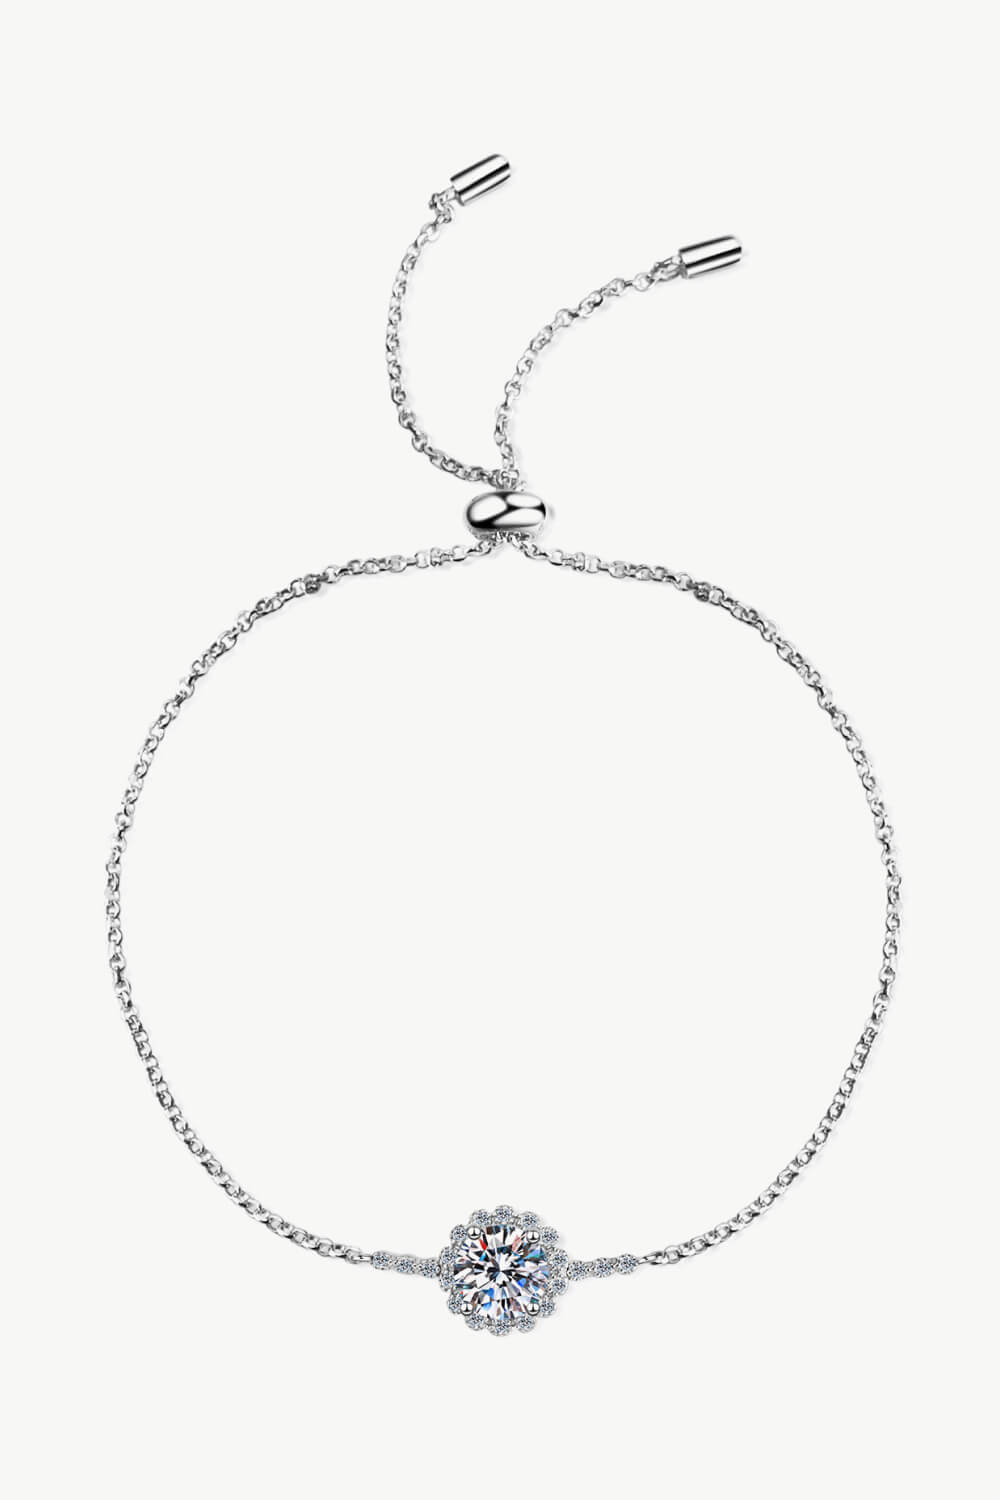 1 Carat Moissanite Chain Bracelet - DromedarShop.com Online Boutique